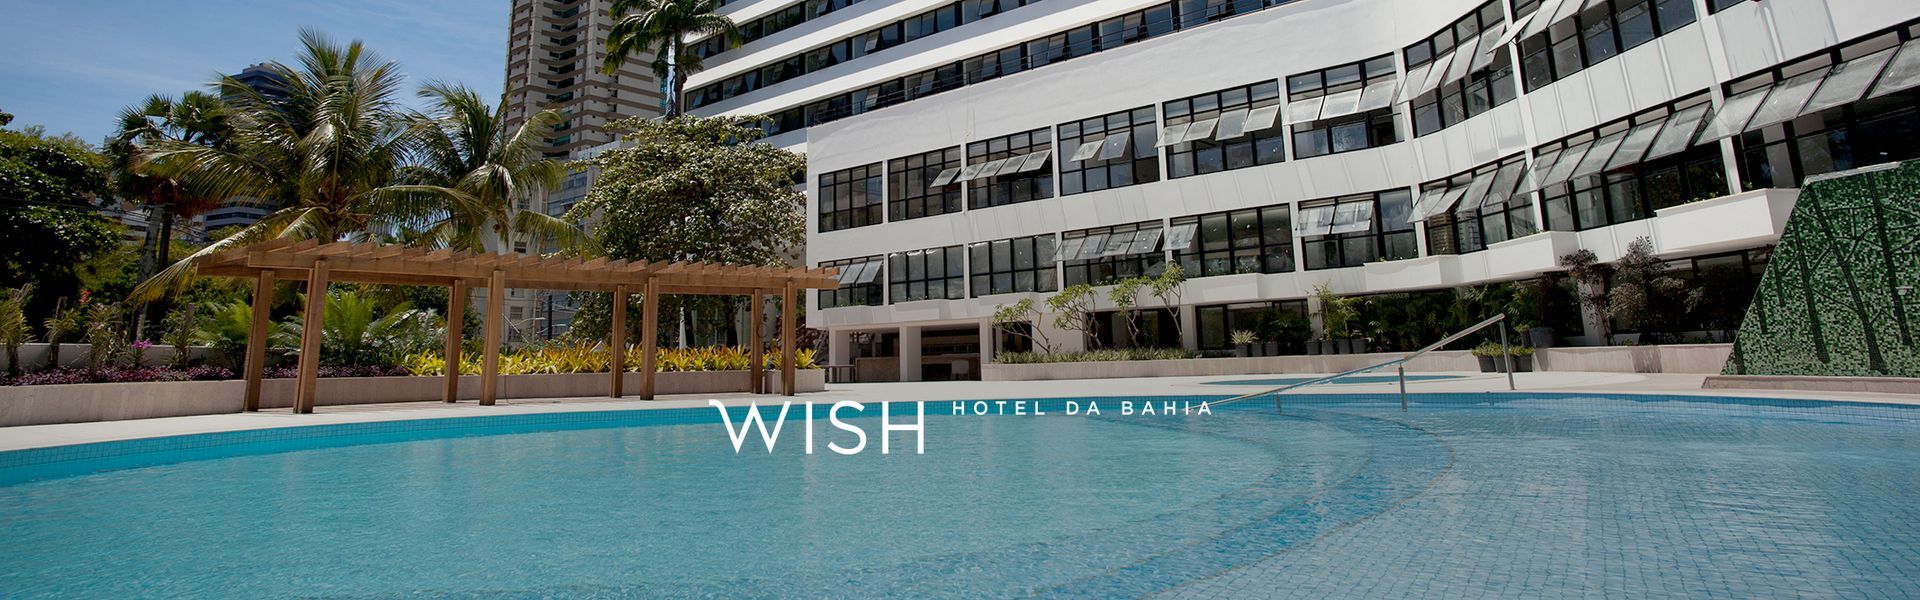 Wish Hotel da Bahia